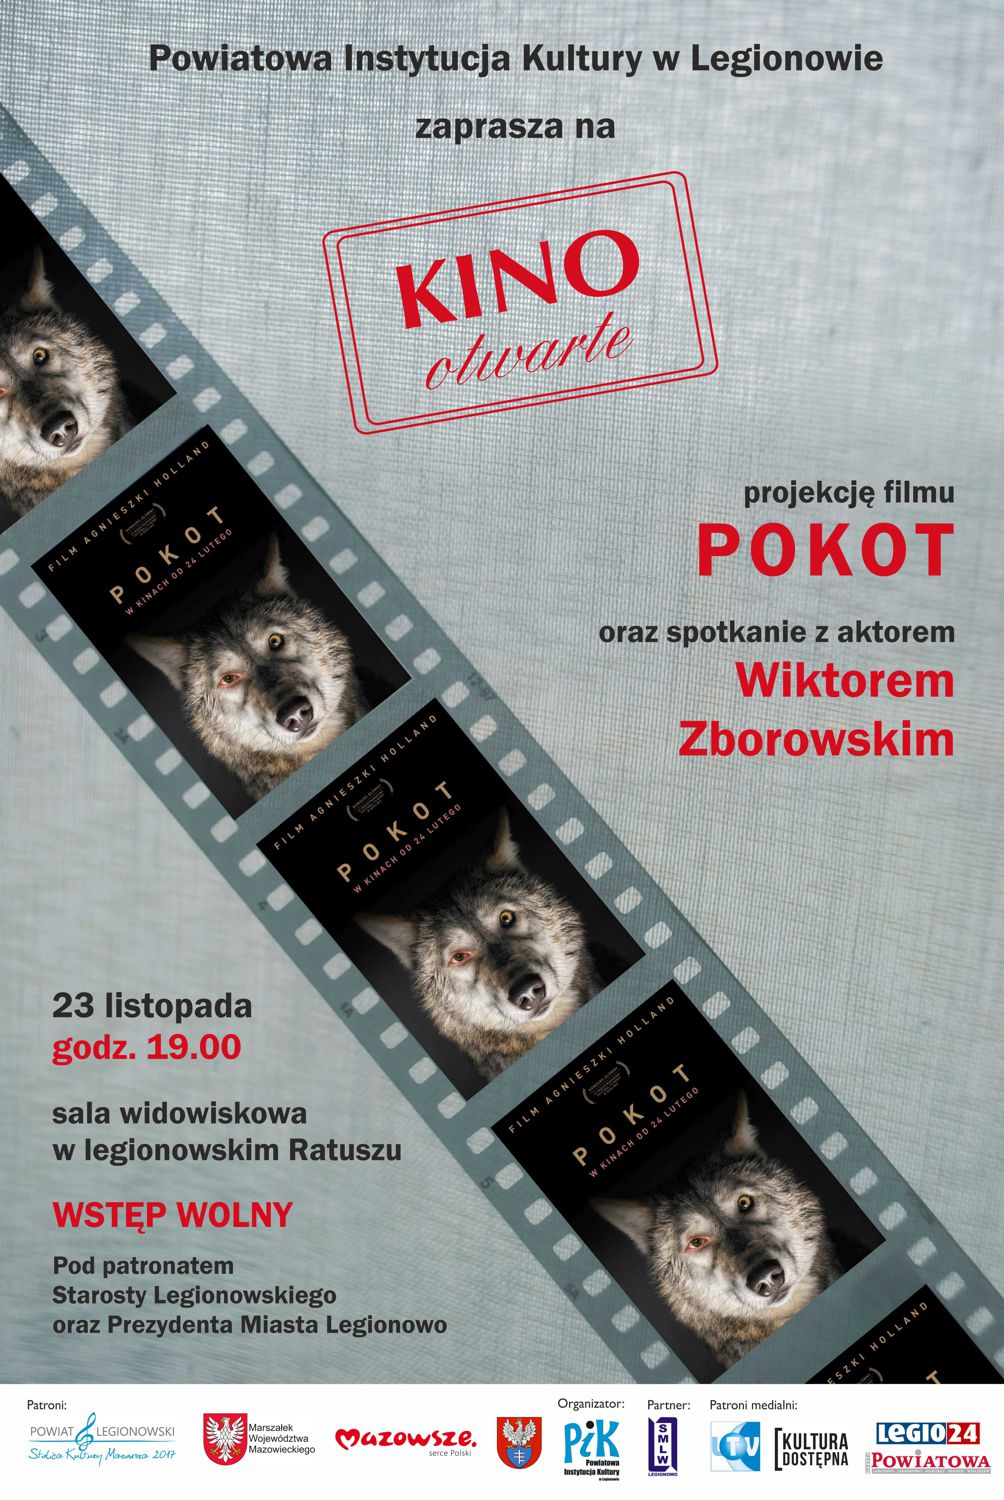 Plakat przedstawiający taśmę filmową, w której kadrami są plakaty z filmu Pokot (na czarnym tle głowa wilka z jednym okiem wilczym, a jednym ludzkim).